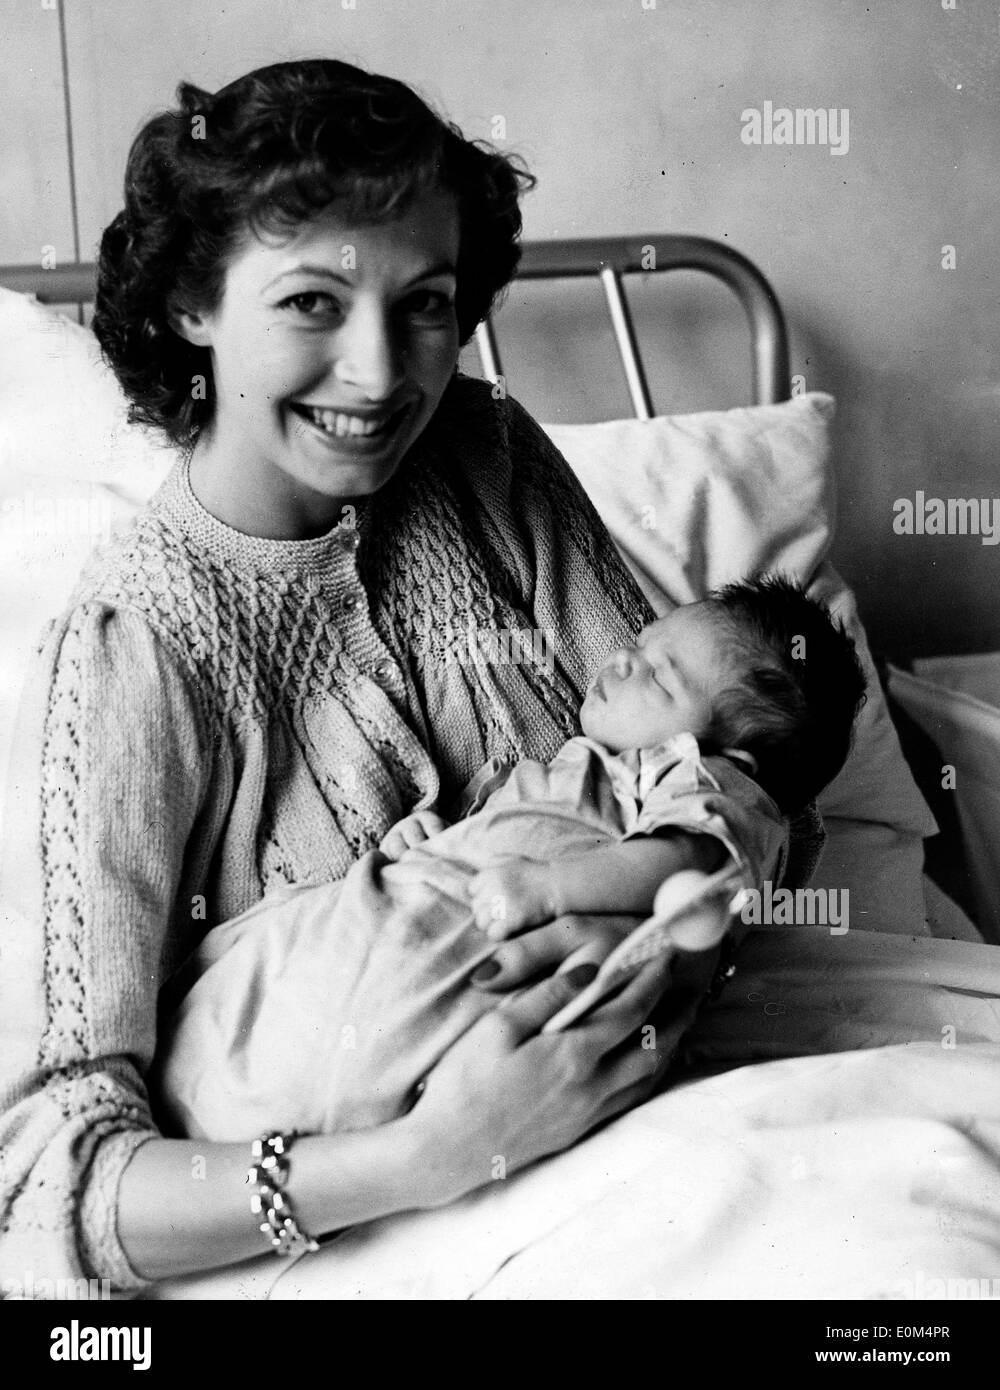 07 août 1953 - London, England, UK - (photo), joueur de tennis britannique LINDA CORNELL, épouse de l'acteur australien Peter Cawthorn, et leur nouveau-né fille Trudy Ann à Saint-Hélier, Hôpital Carshalton. Banque D'Images